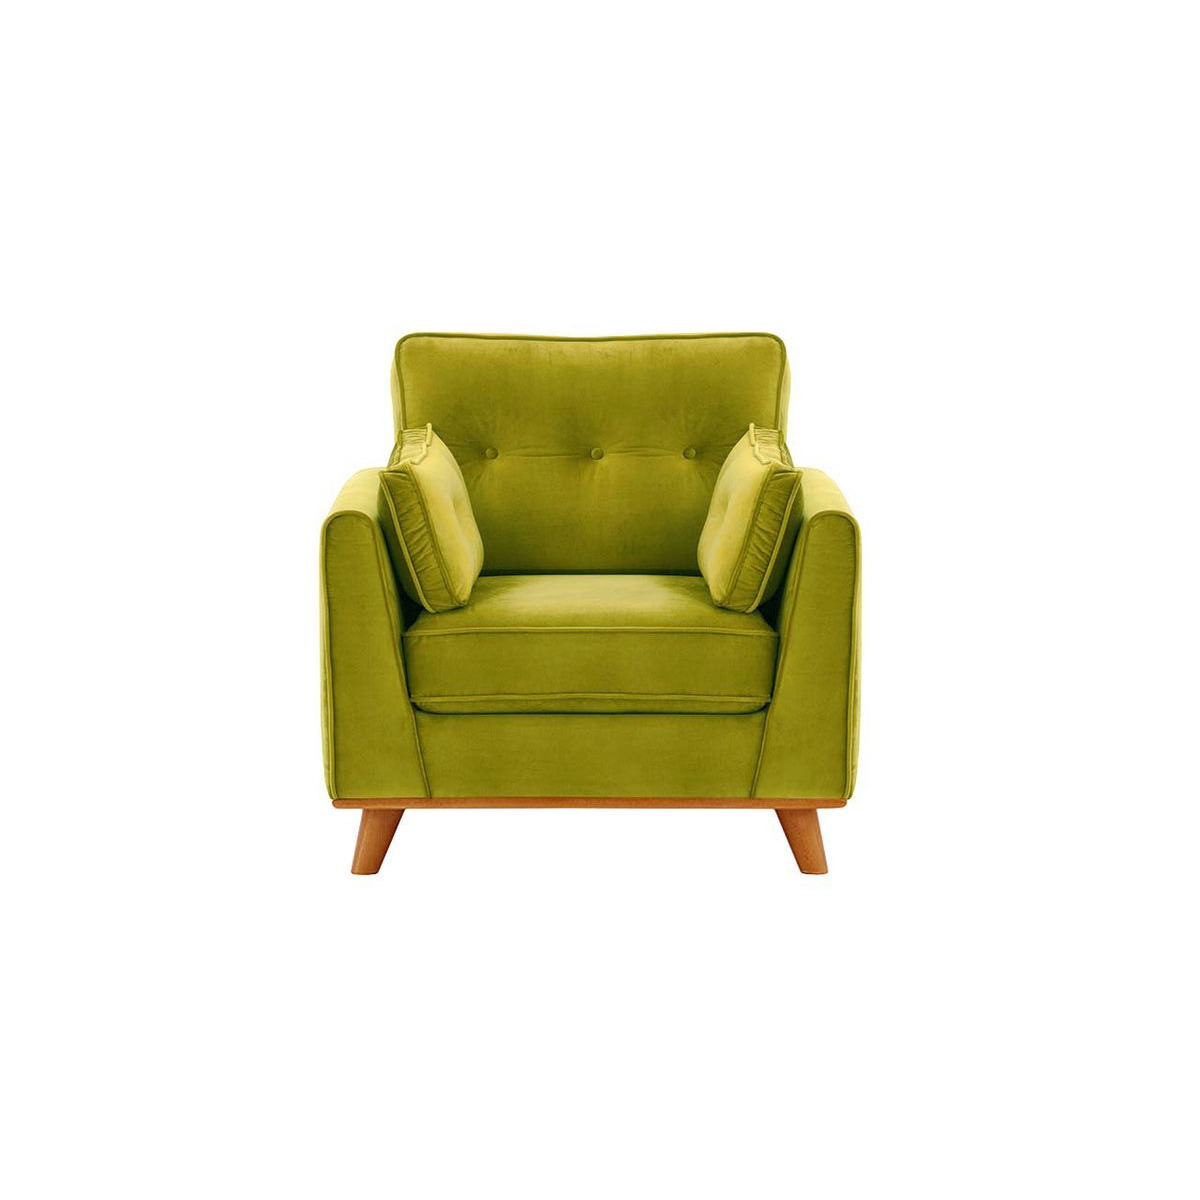 Farrow Armchair, olive green, Leg colour: aveo - image 1